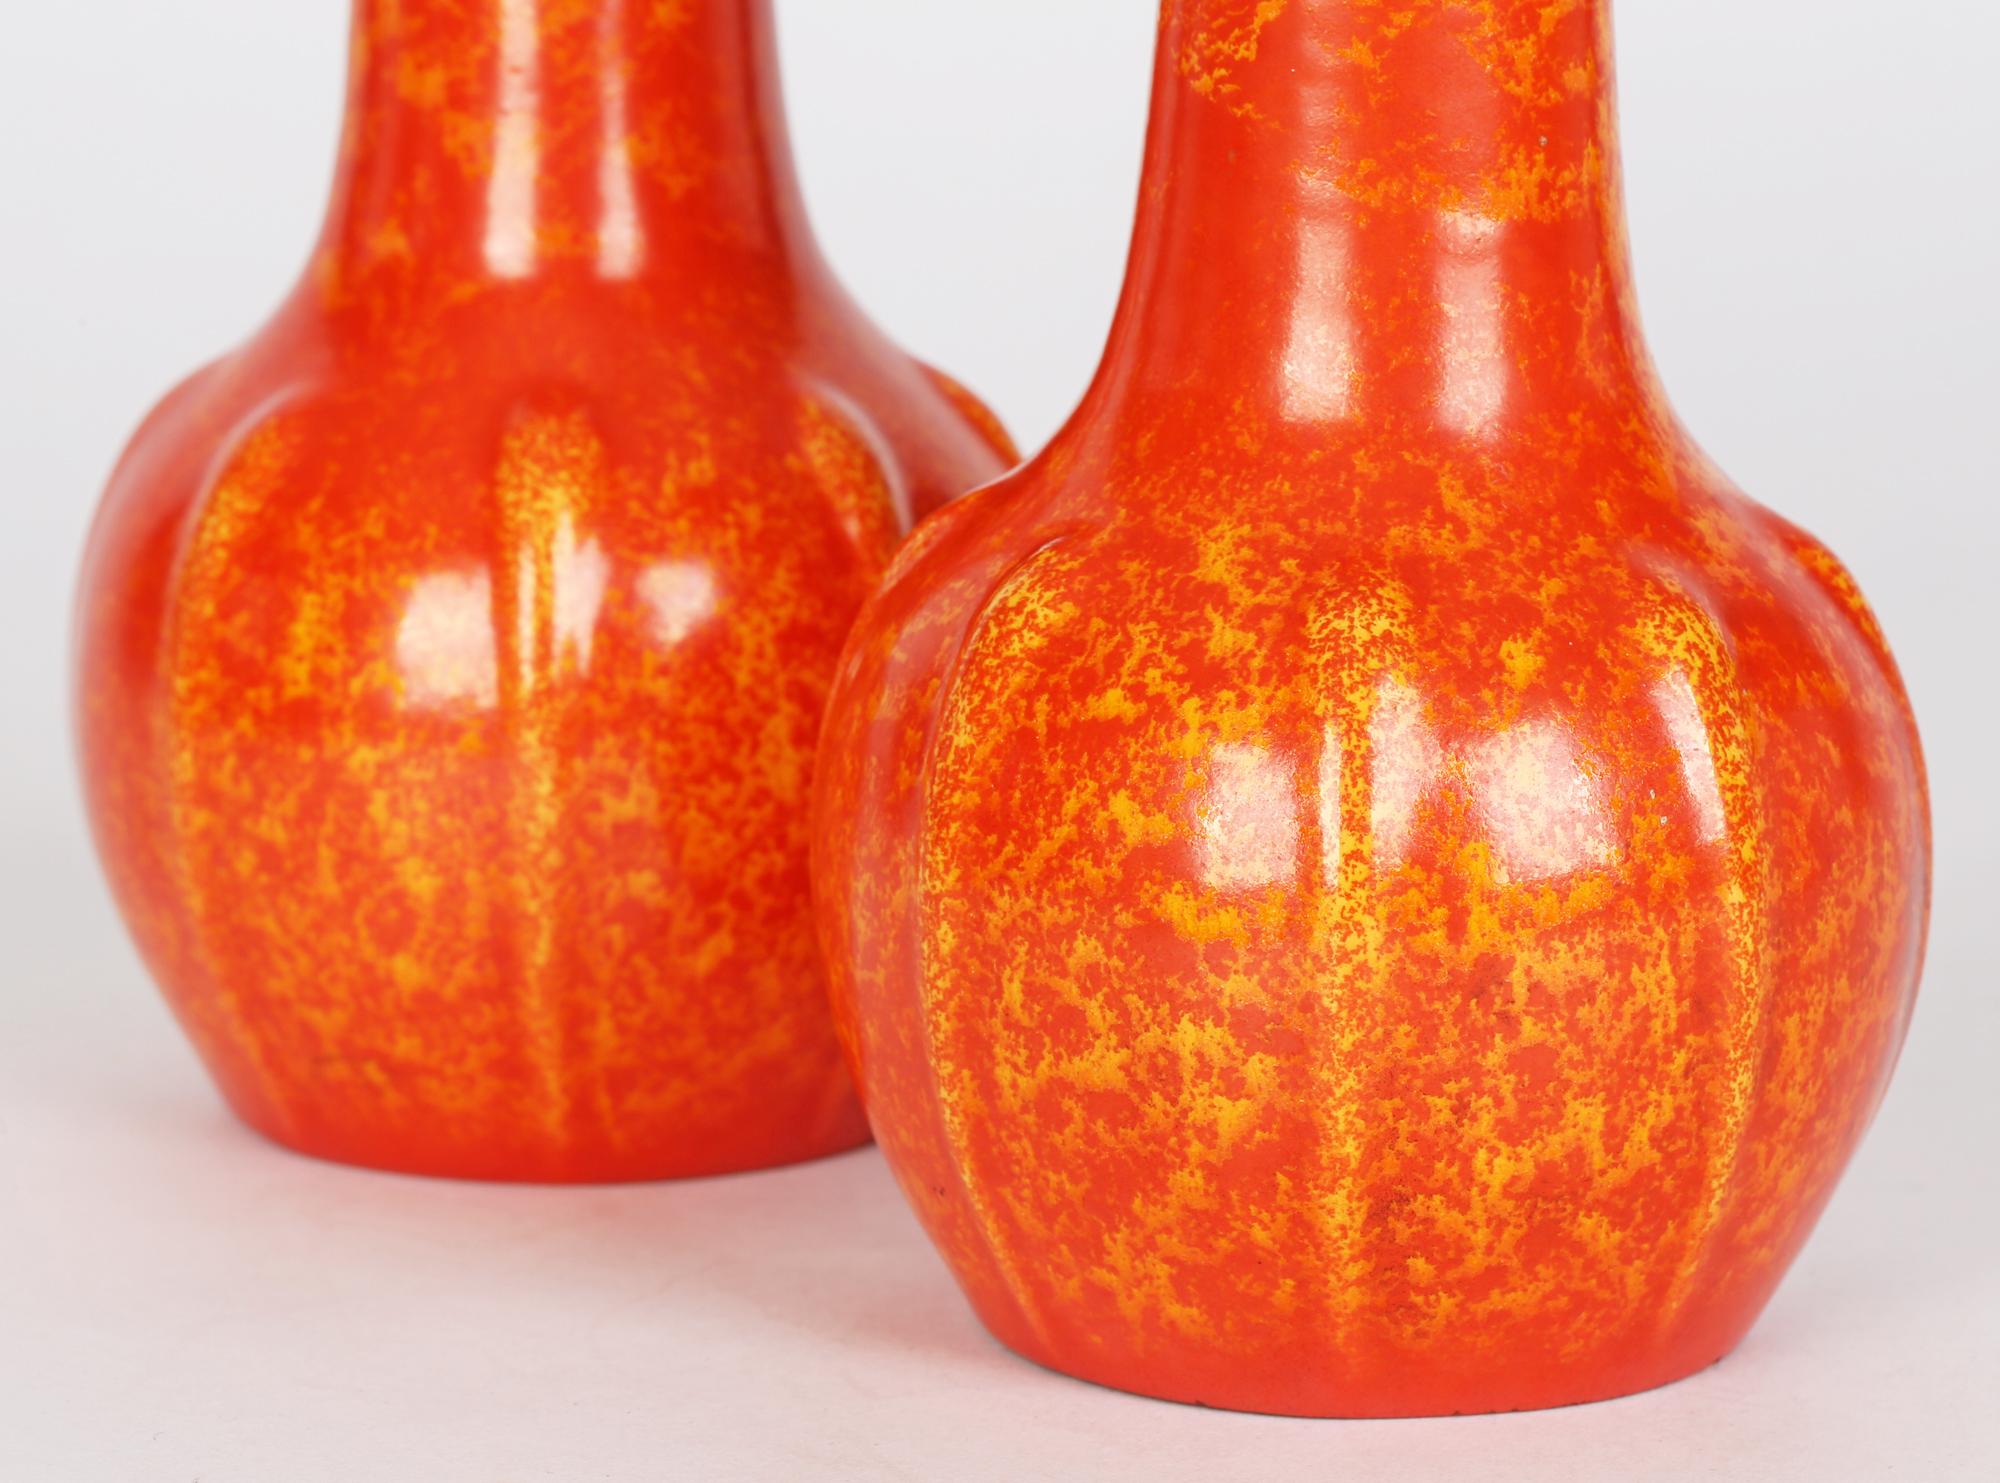 Pilkington Pair Art Deco Orange Vermilion Glazed Art Pottery Vases 2